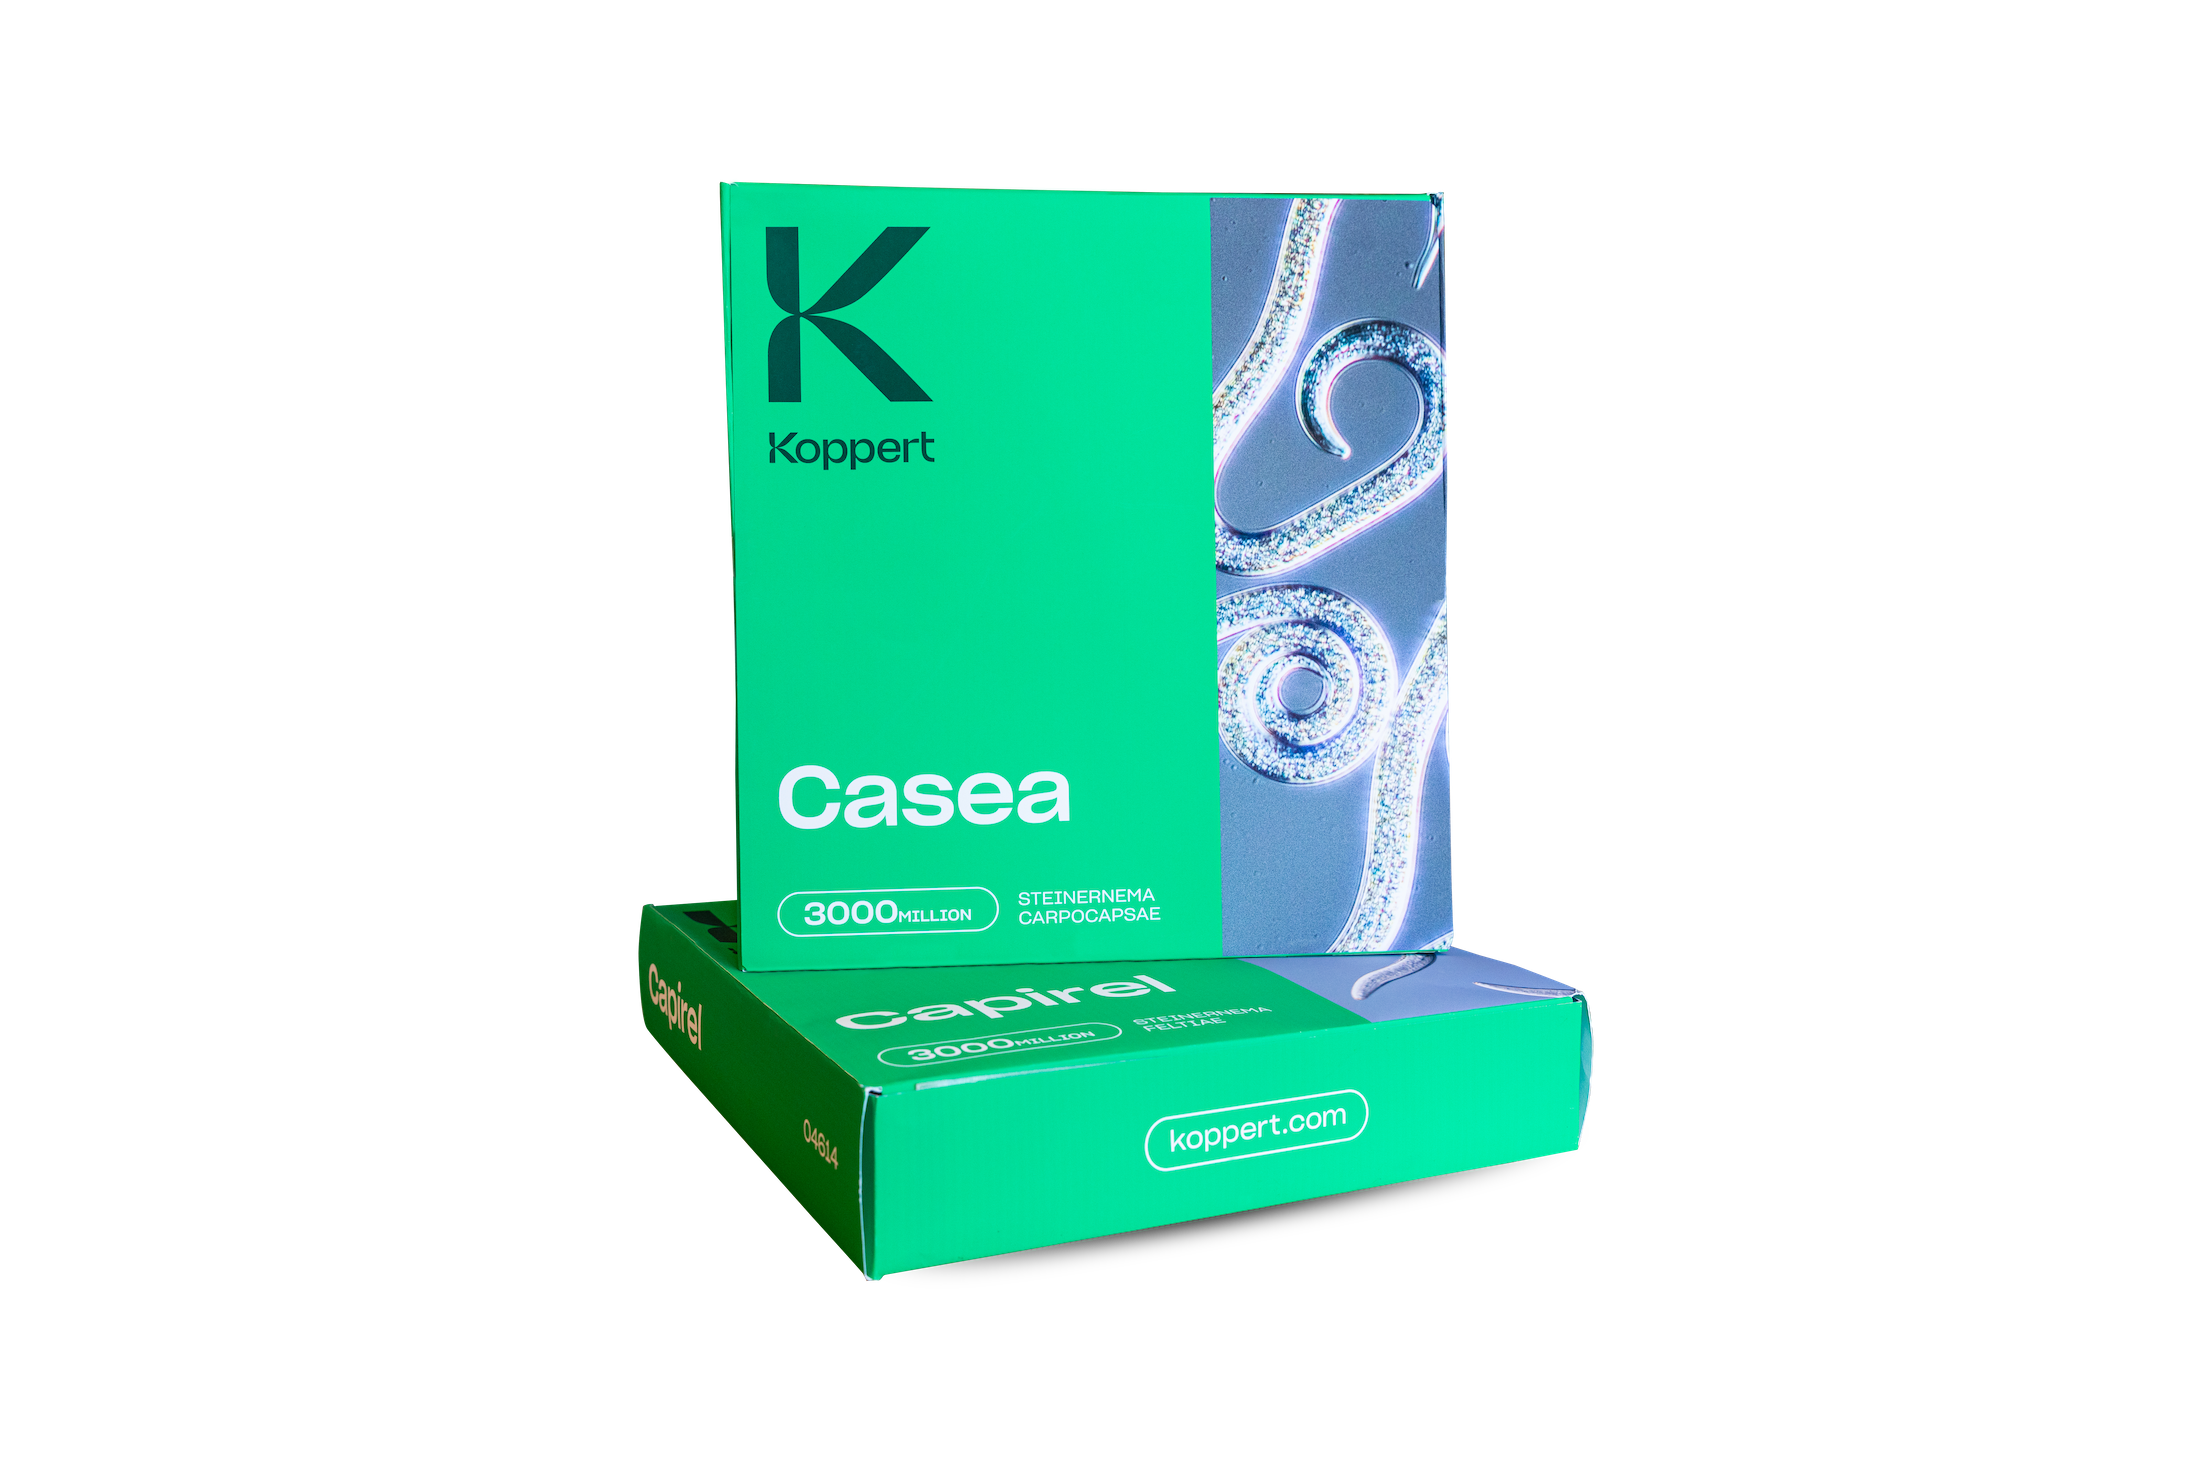 Casea - Capirel-envases-Koppert